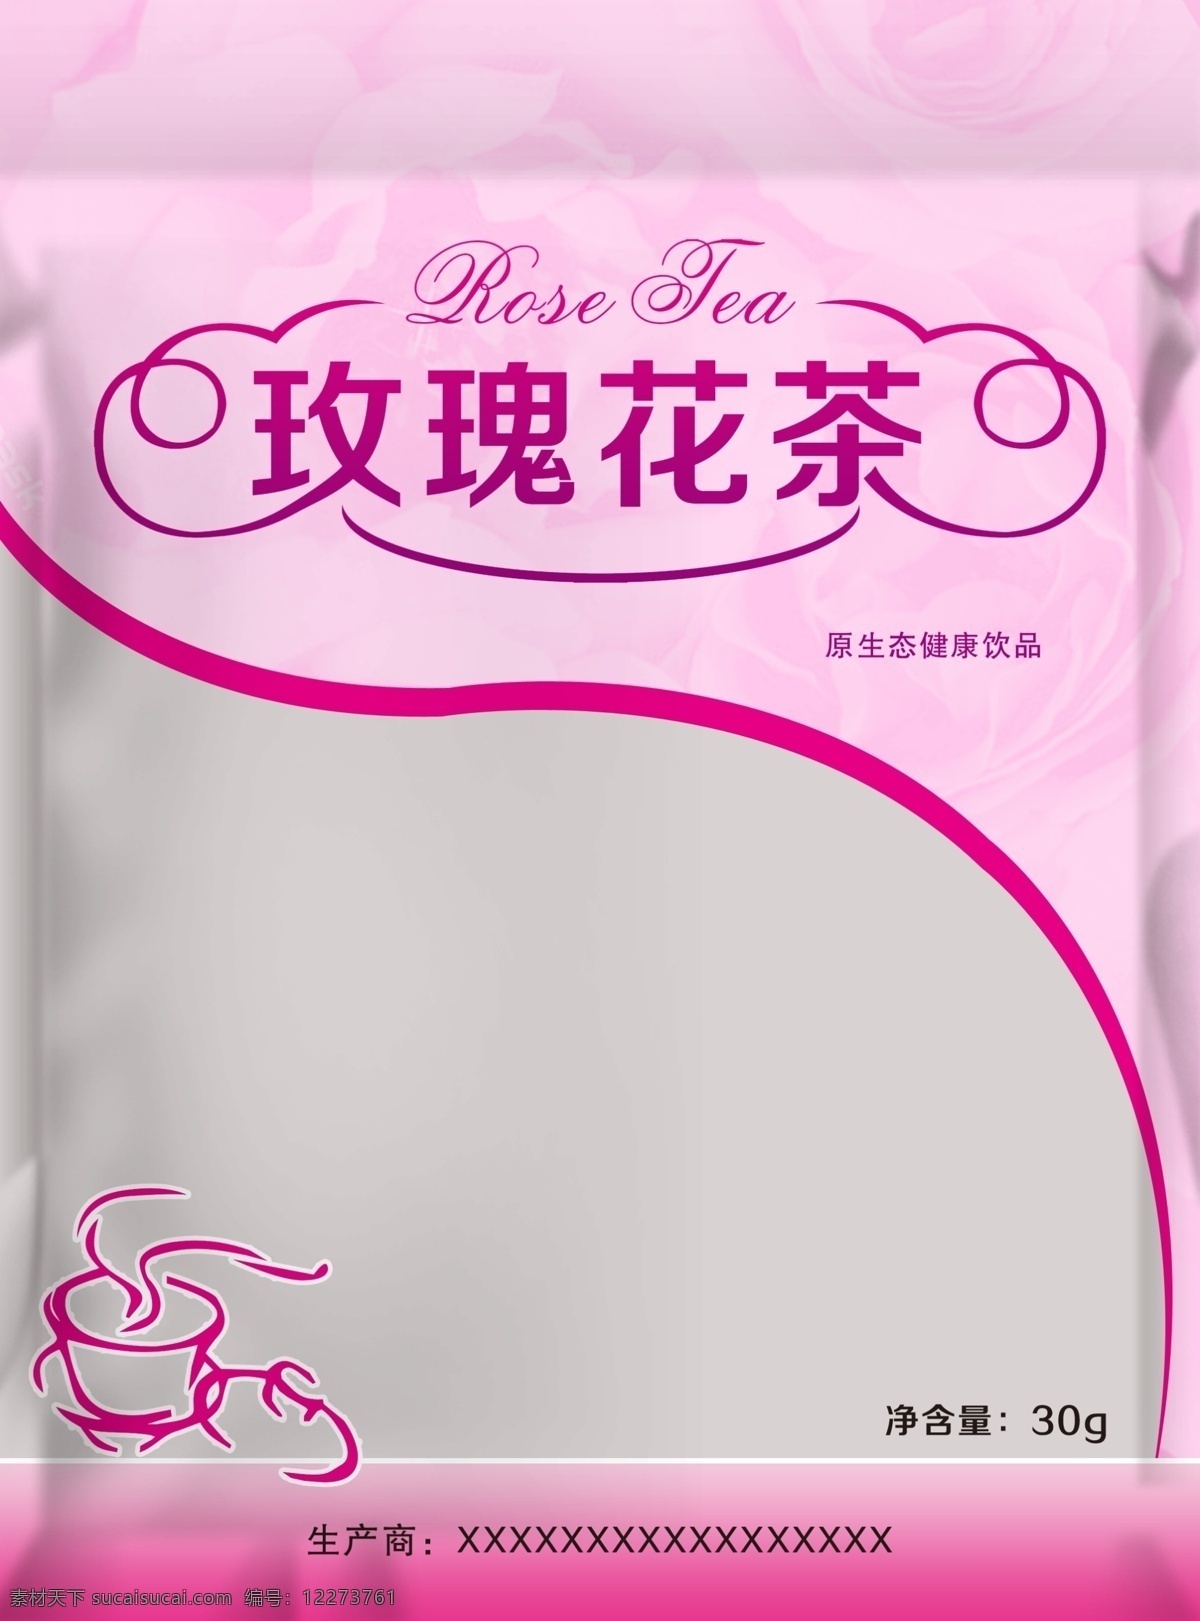 玫瑰 花茶 包装 效果图 模版下载 茶杯 玫瑰背景 包装效果图 包装设计 广告设计模板 源文件 灰色